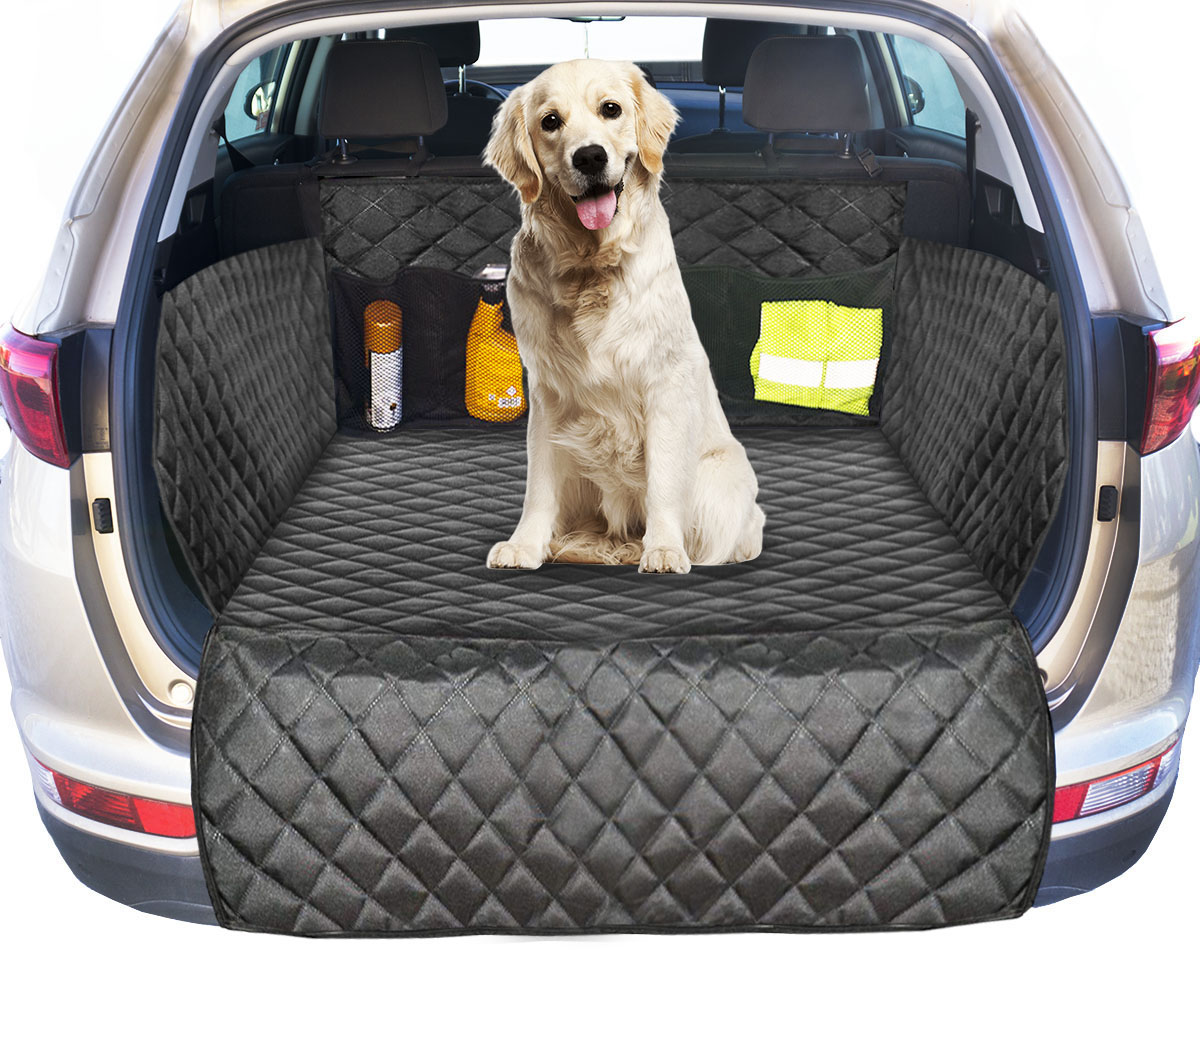 Автомобиль накидка собака. Чехол в багажник для собак в Ауди q7. Автонакидка для собак Элит одинарная, Elite. Коврик для собаки в машину в багажник. Накидка в багажник автомобиля для собак.